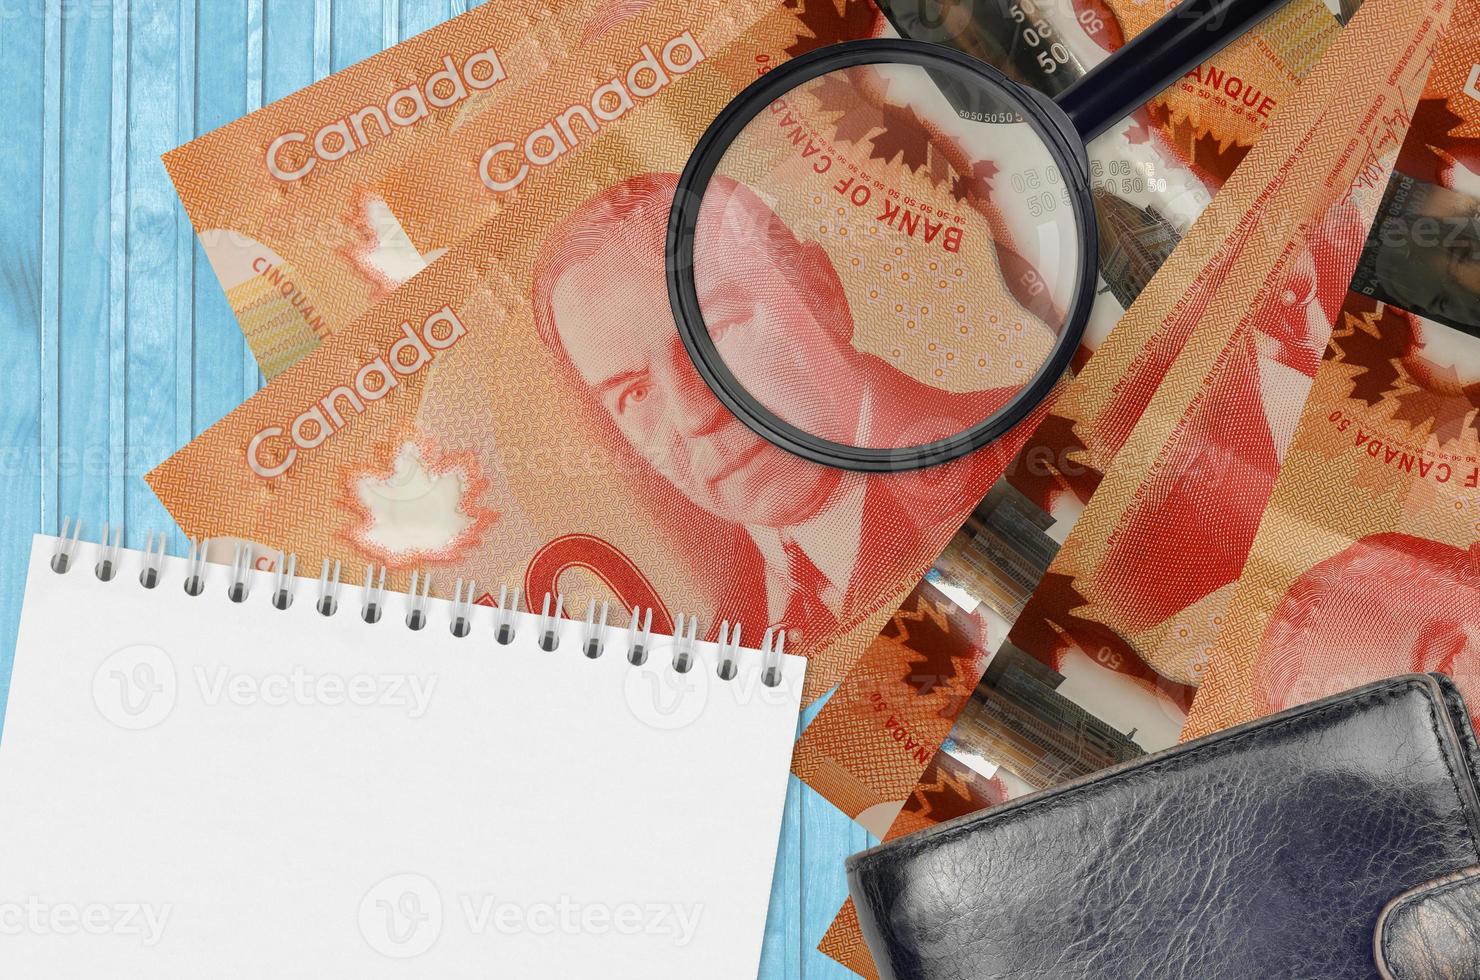 Billets de 50 dollars canadiens et loupe avec sac à main noir et bloc-notes. concept de fausse monnaie. rechercher les différences dans les détails des billets de banque pour détecter les faux photo